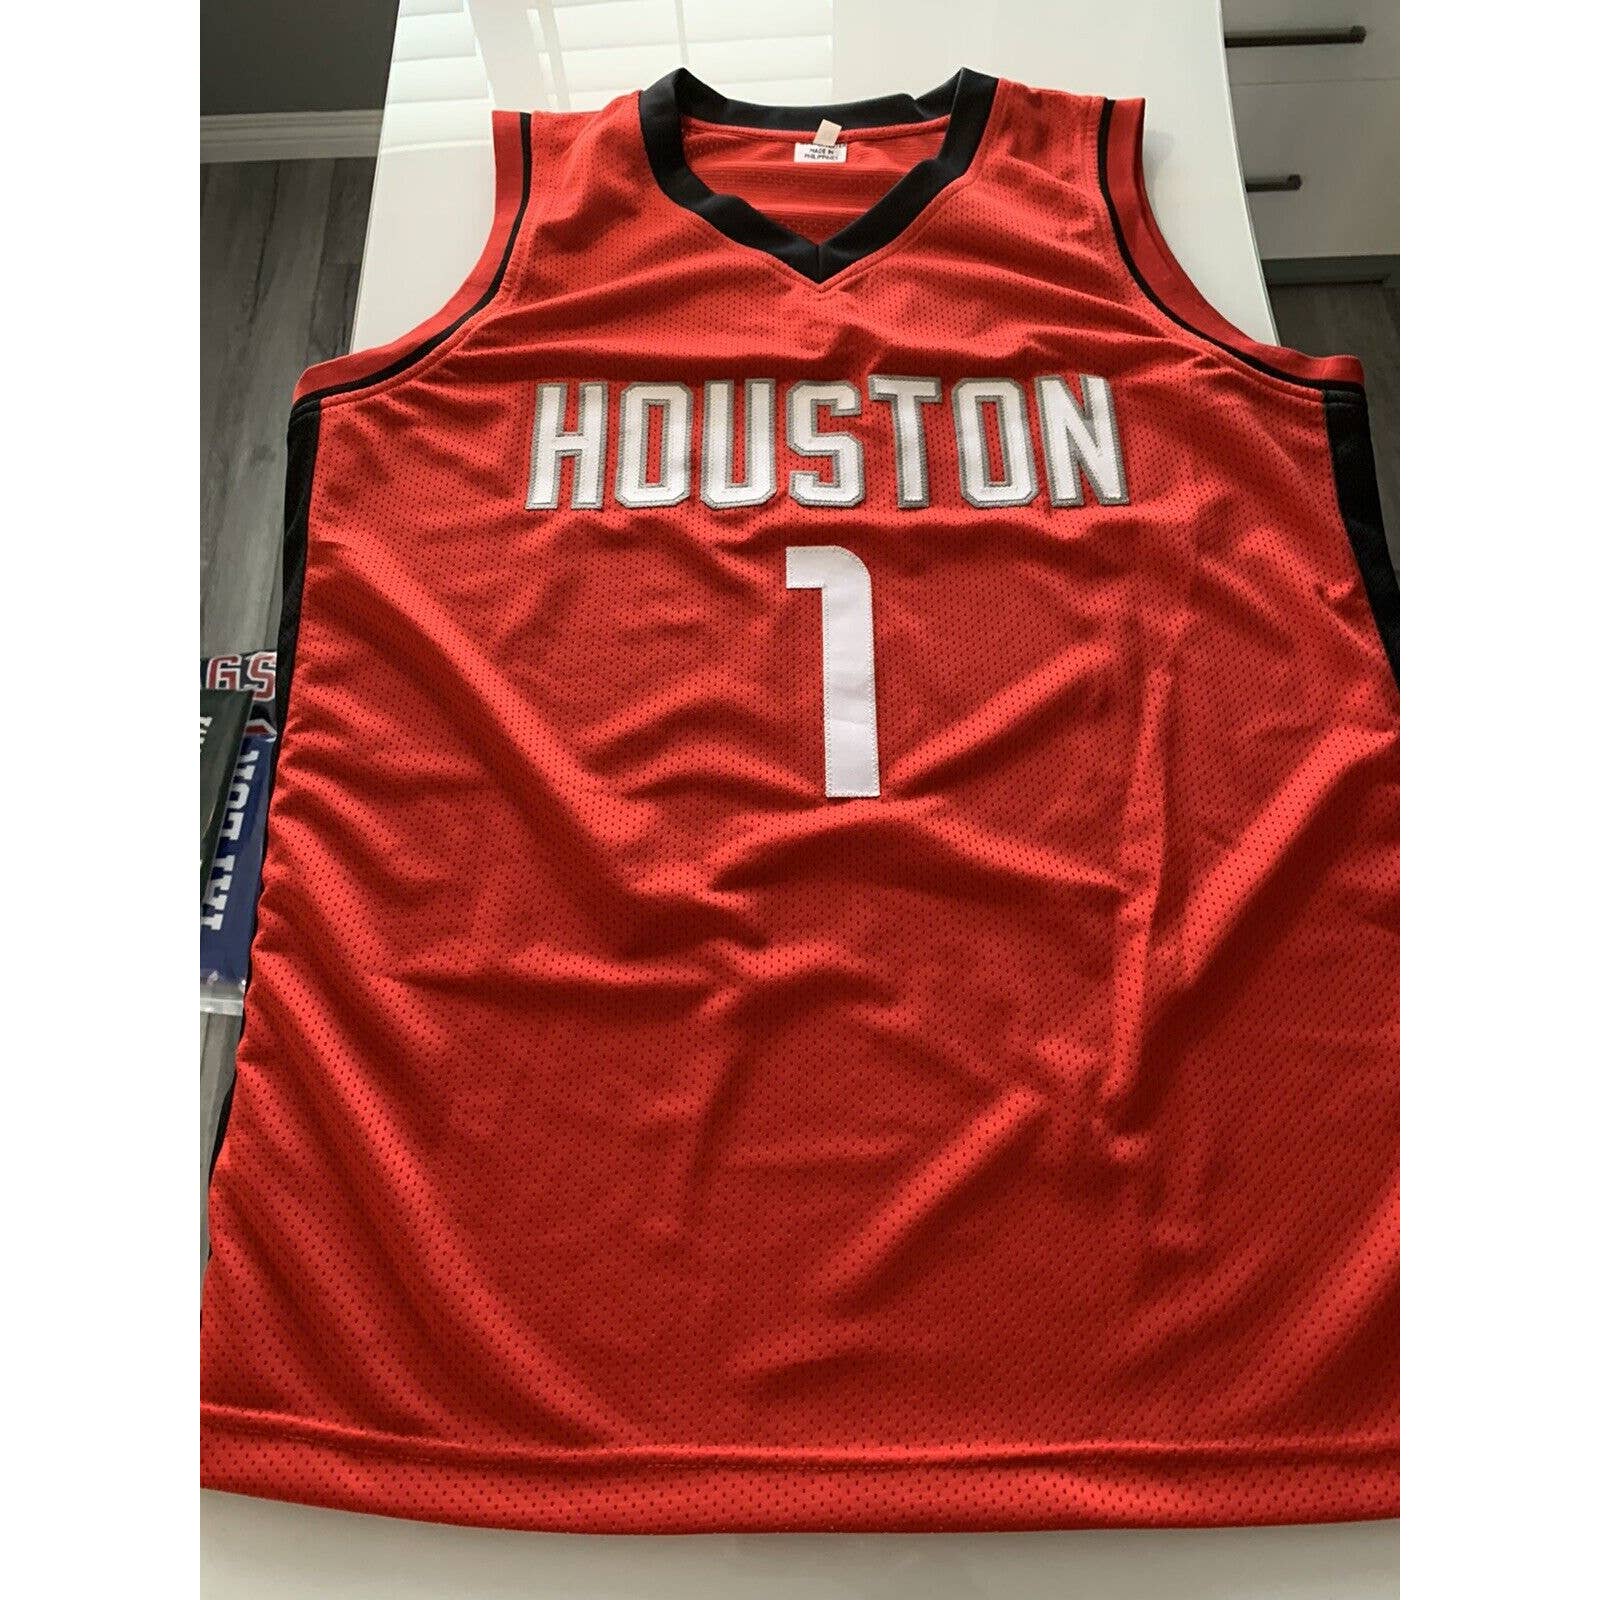 John Wall Autographed/Signed Jersey Beckett COA Houston Rockets - TreasuresEvolved